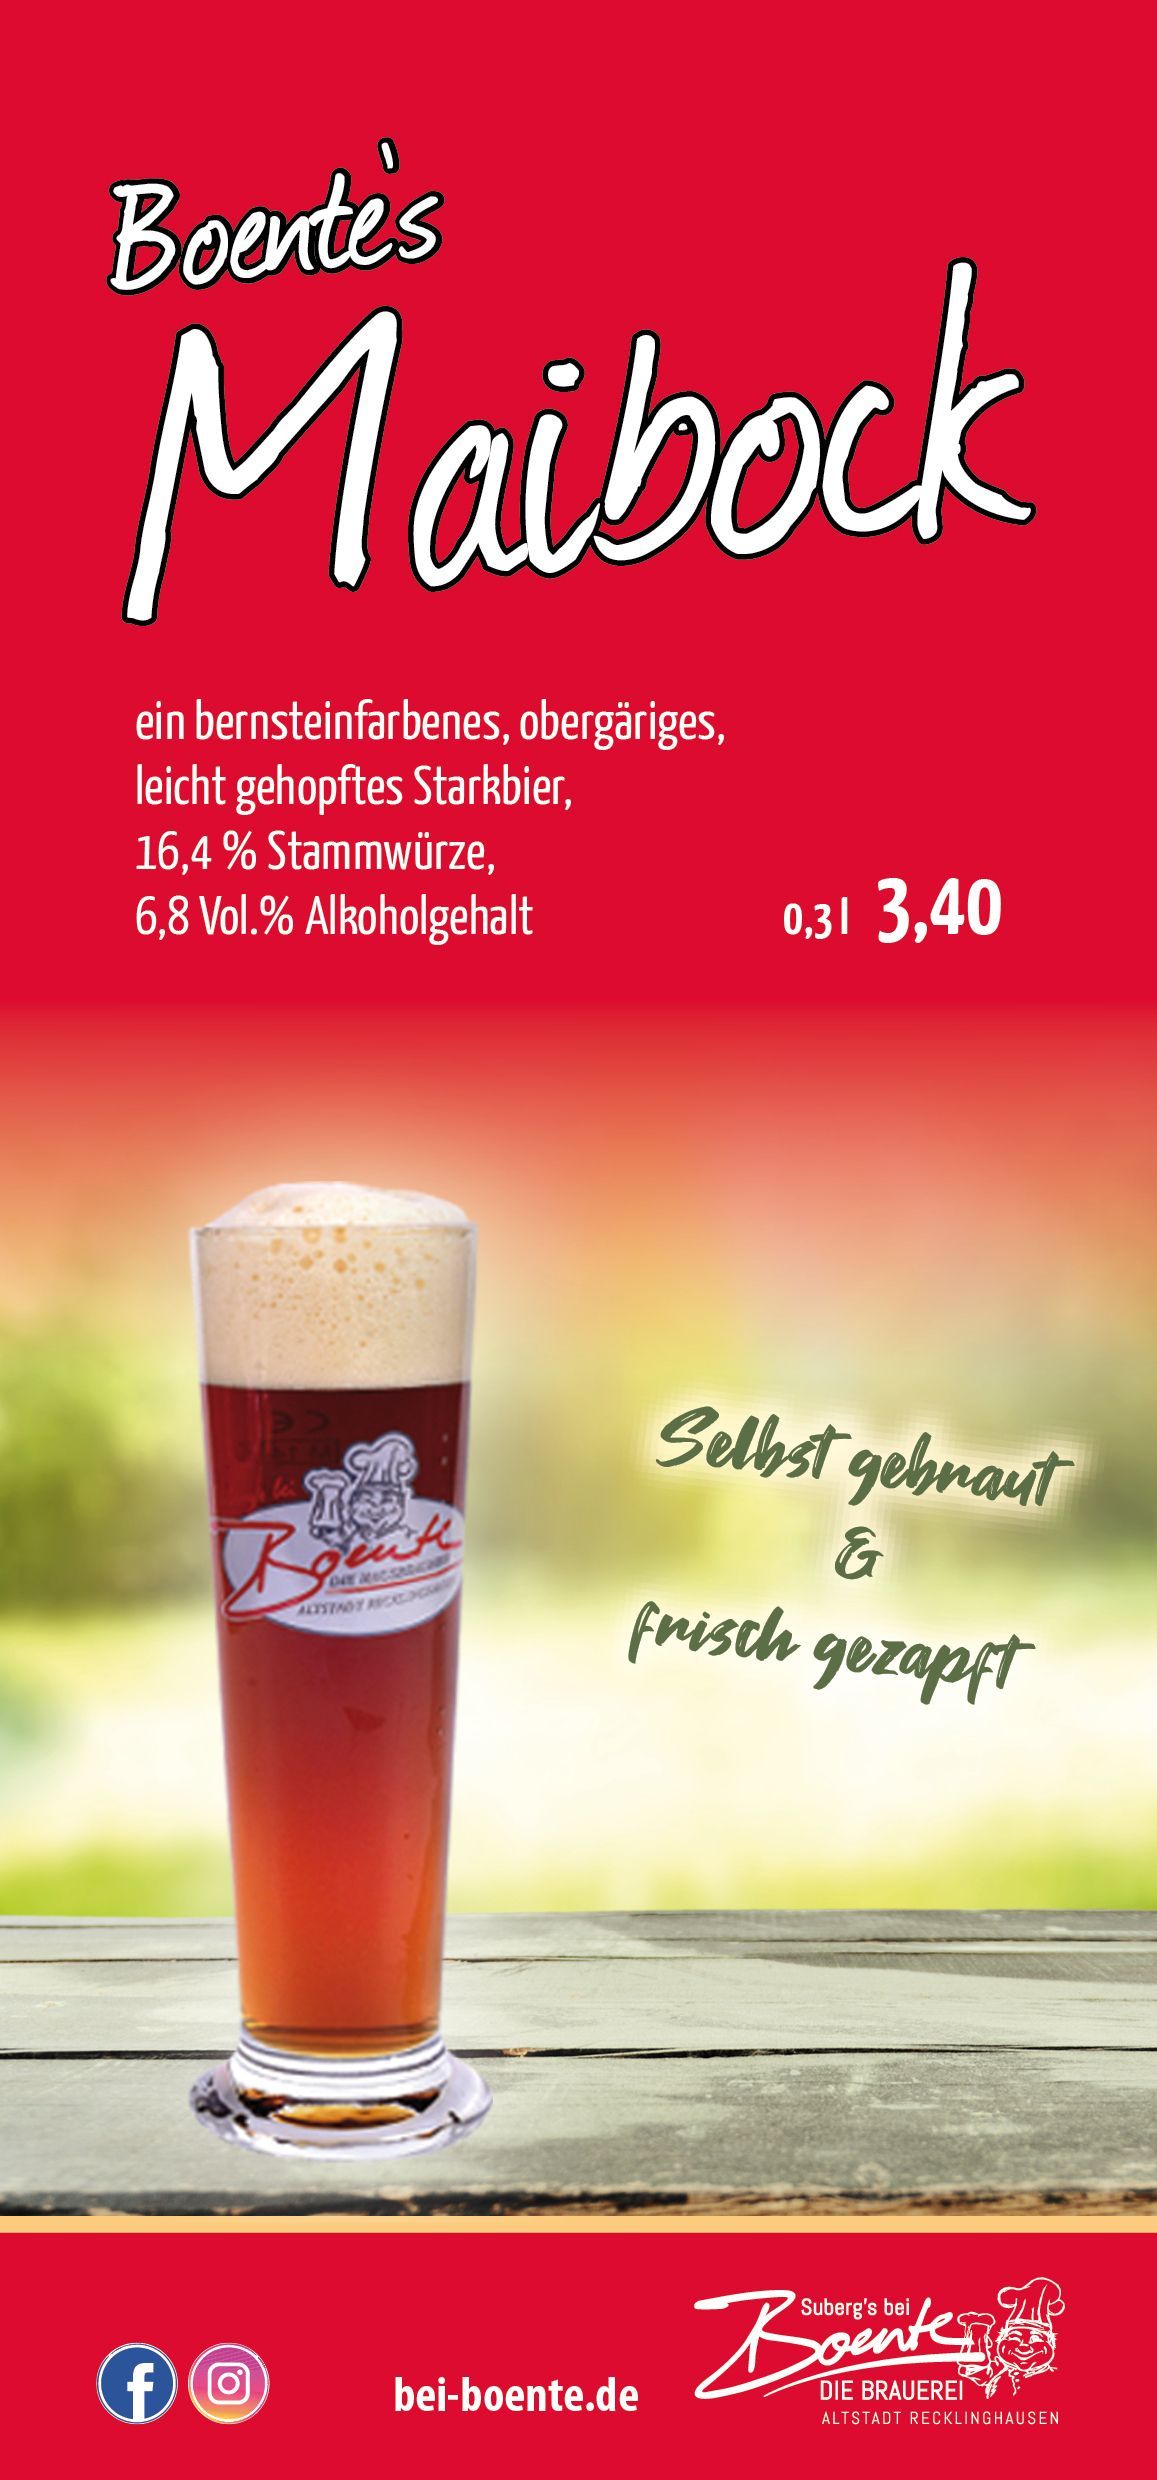 Boentes Bier | Recklinghausen